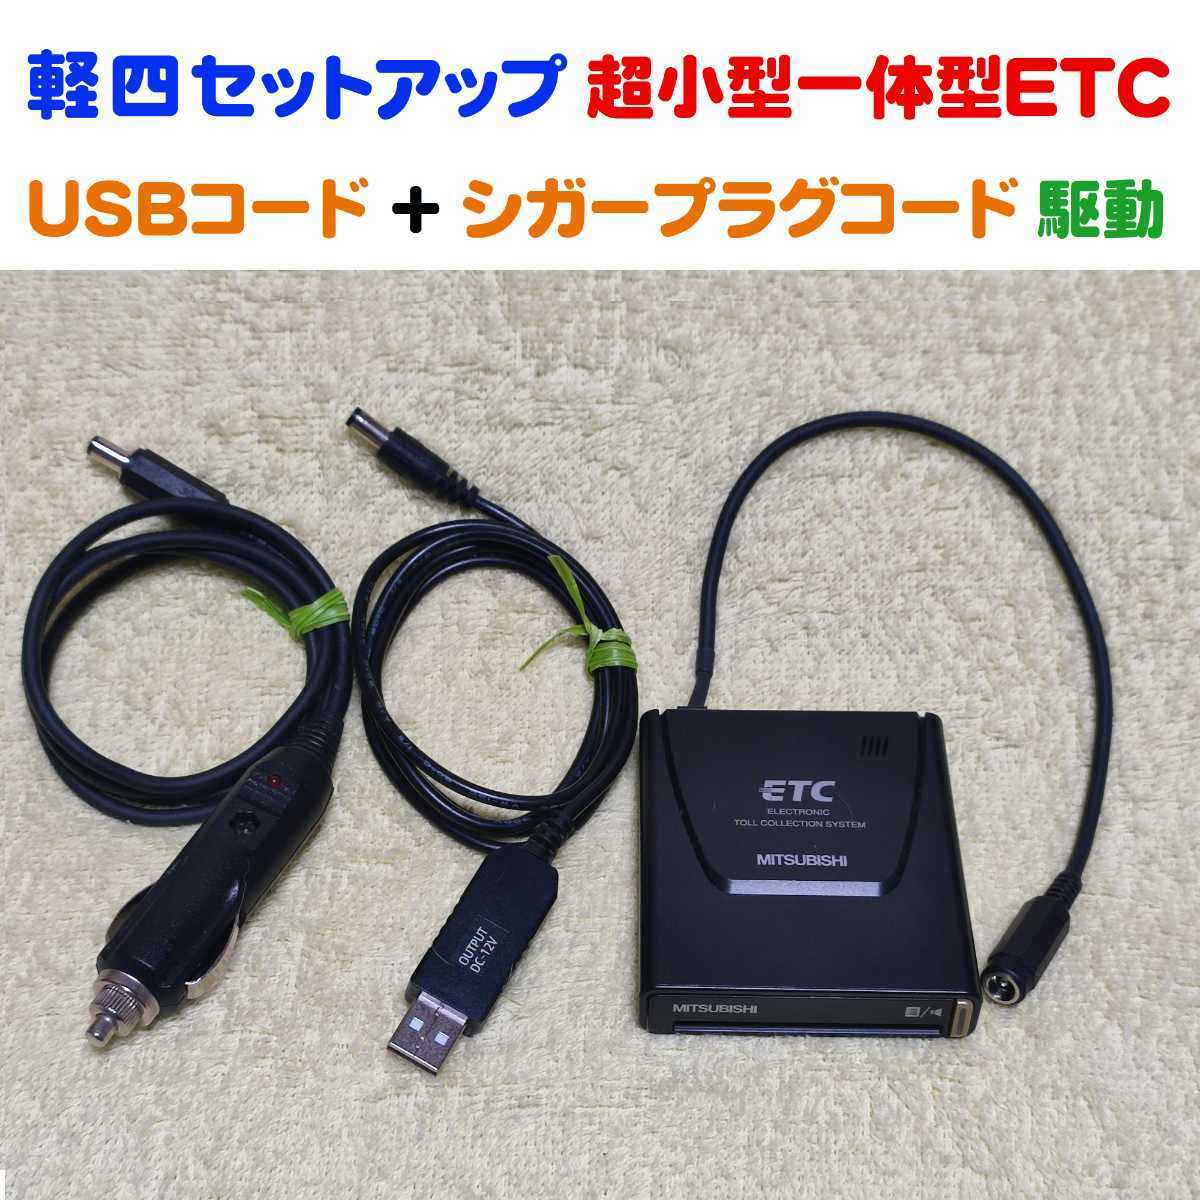 軽自動車セットアップ 超小型一体型ETC車載機 三菱EP-9U5*V（シンプルで故障が少ない） USB昇圧コード + シガープラグコード 二電源の画像1